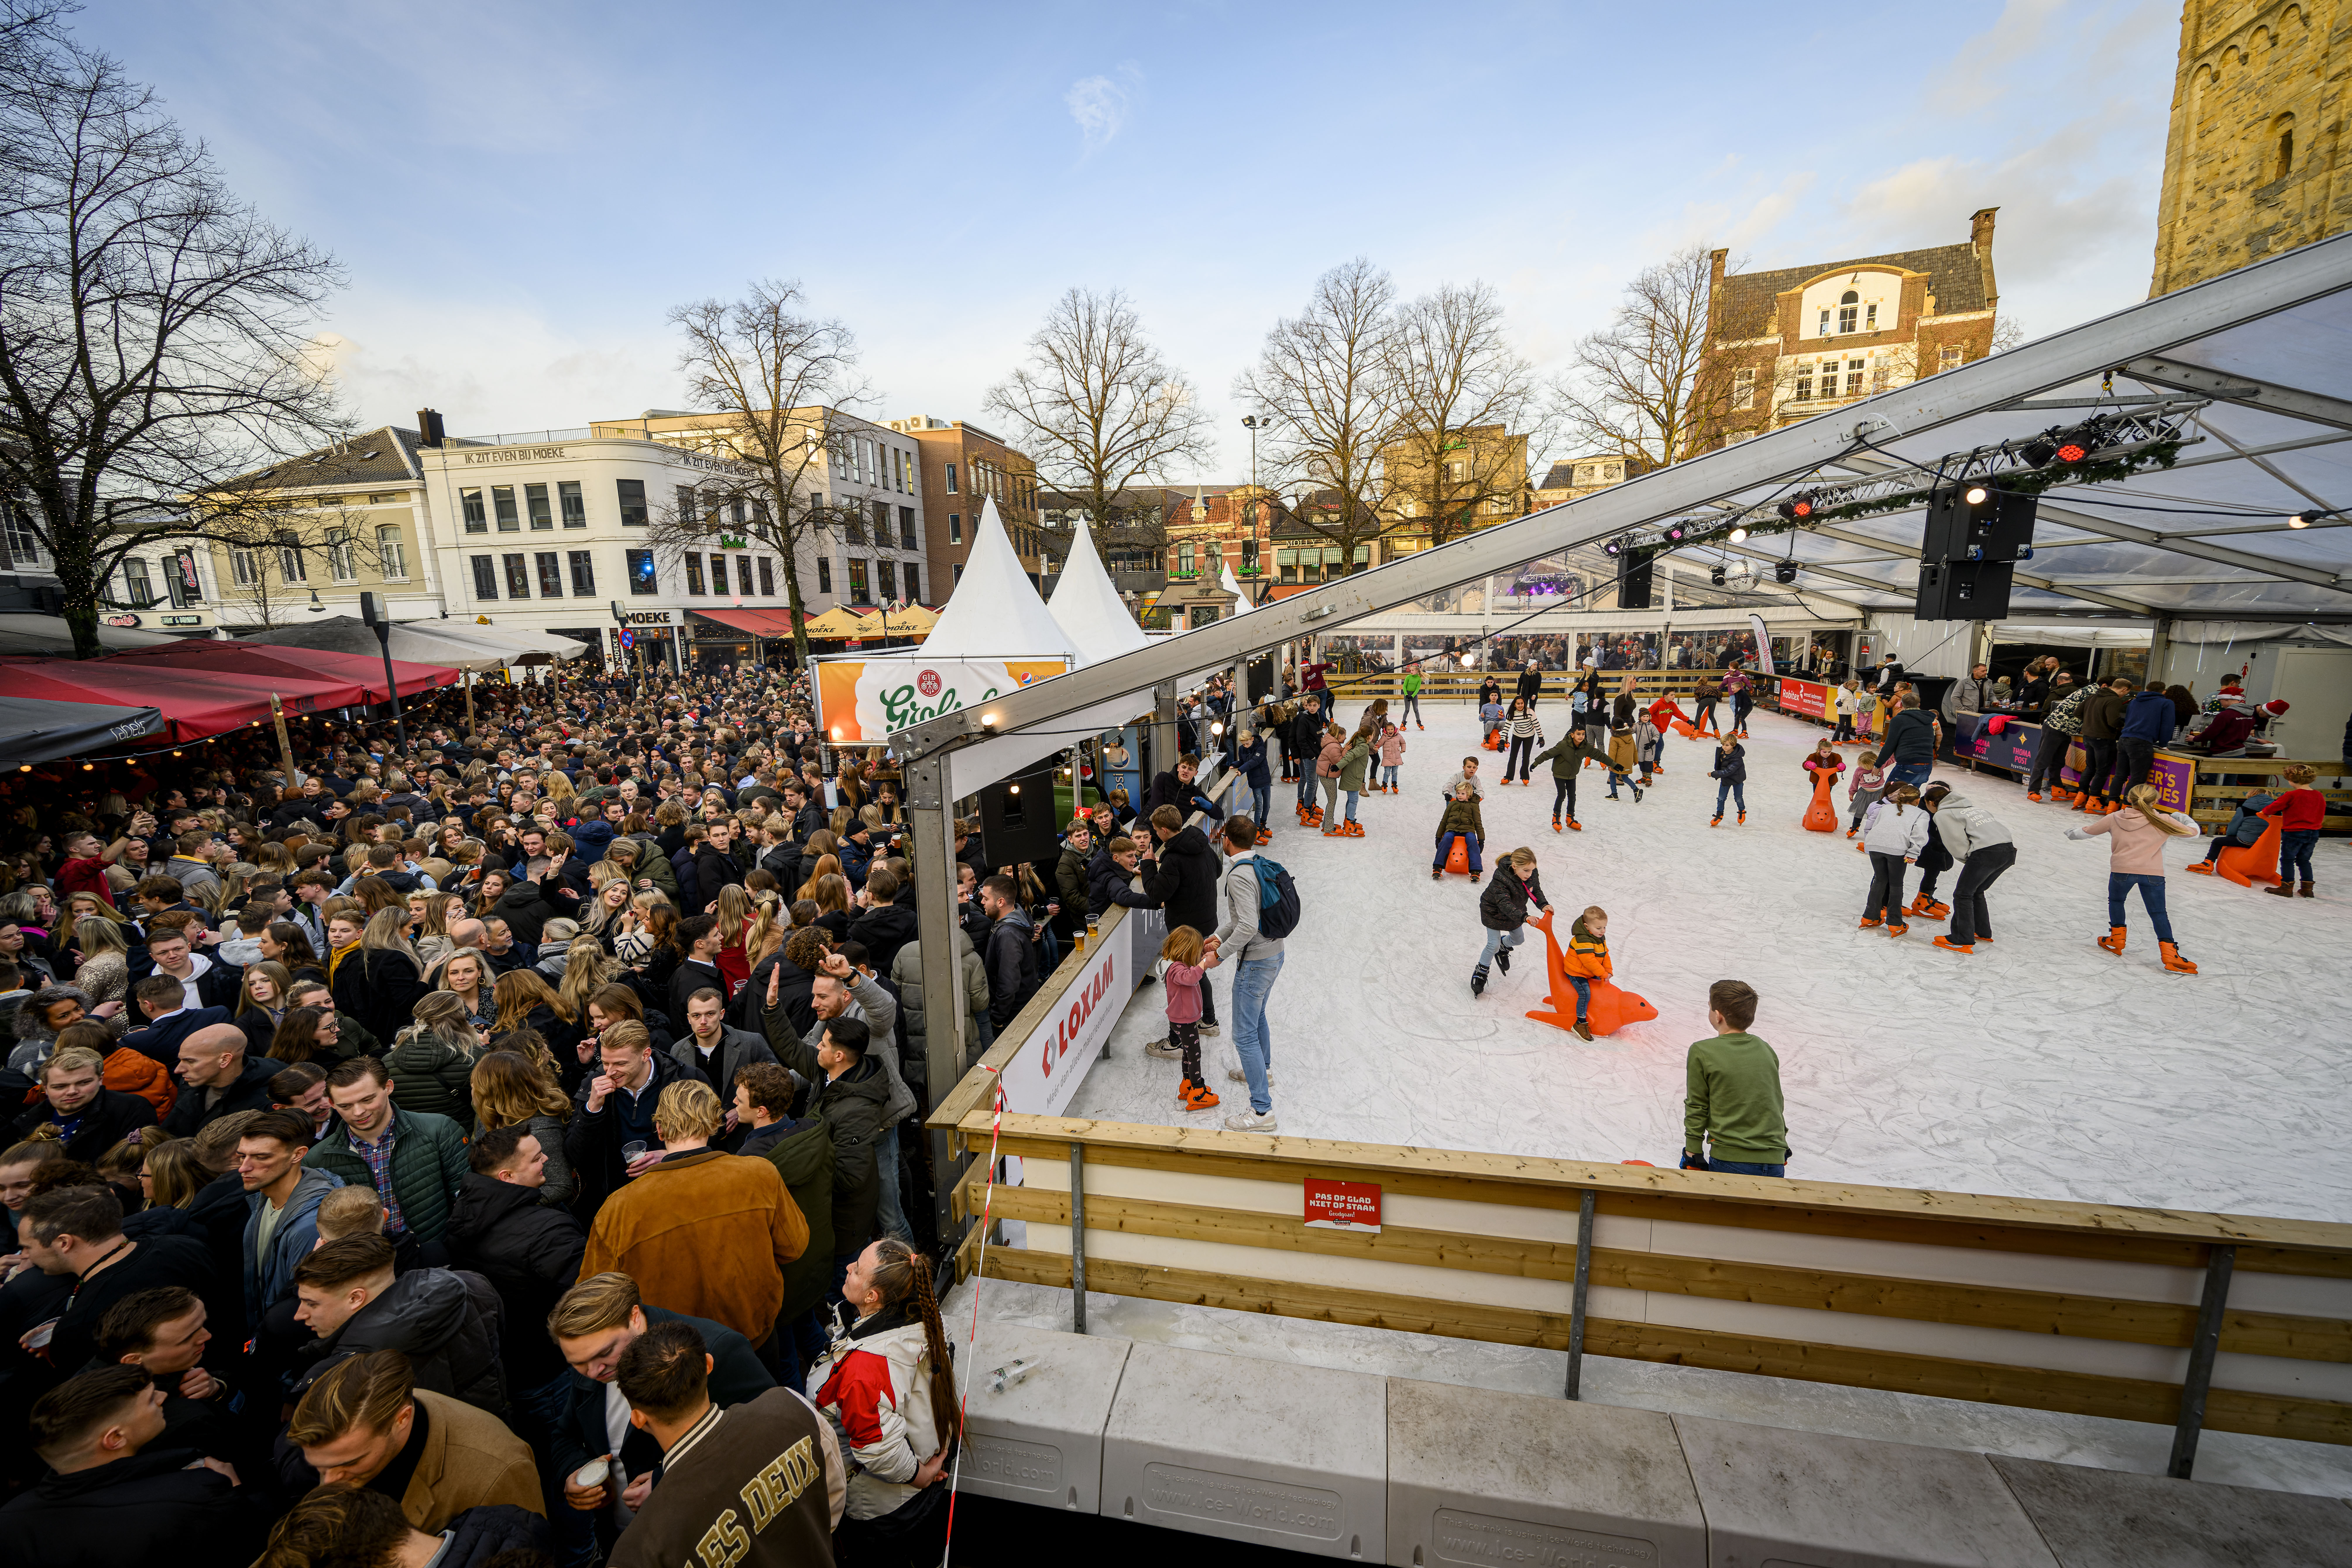 De ijsbaan van buitenaf op de Oude Markt Enschede tijdens kerstmiddag Enschede